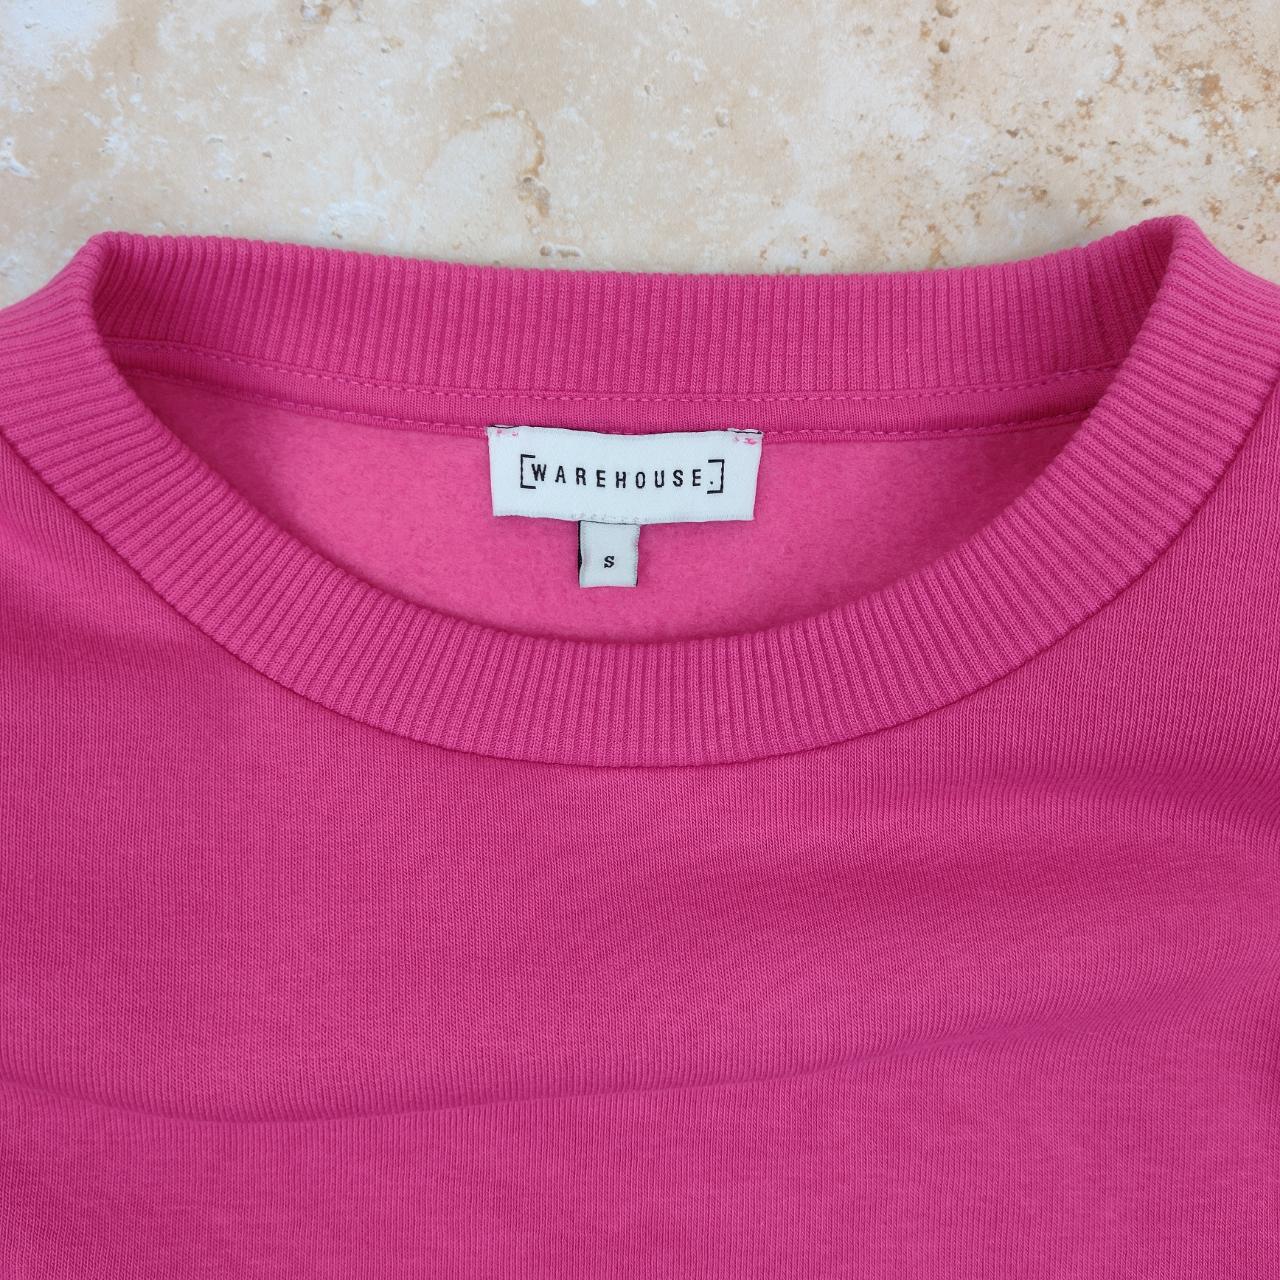 Warehouse Sweatshirt ~Hot pink, crew neck... - Depop